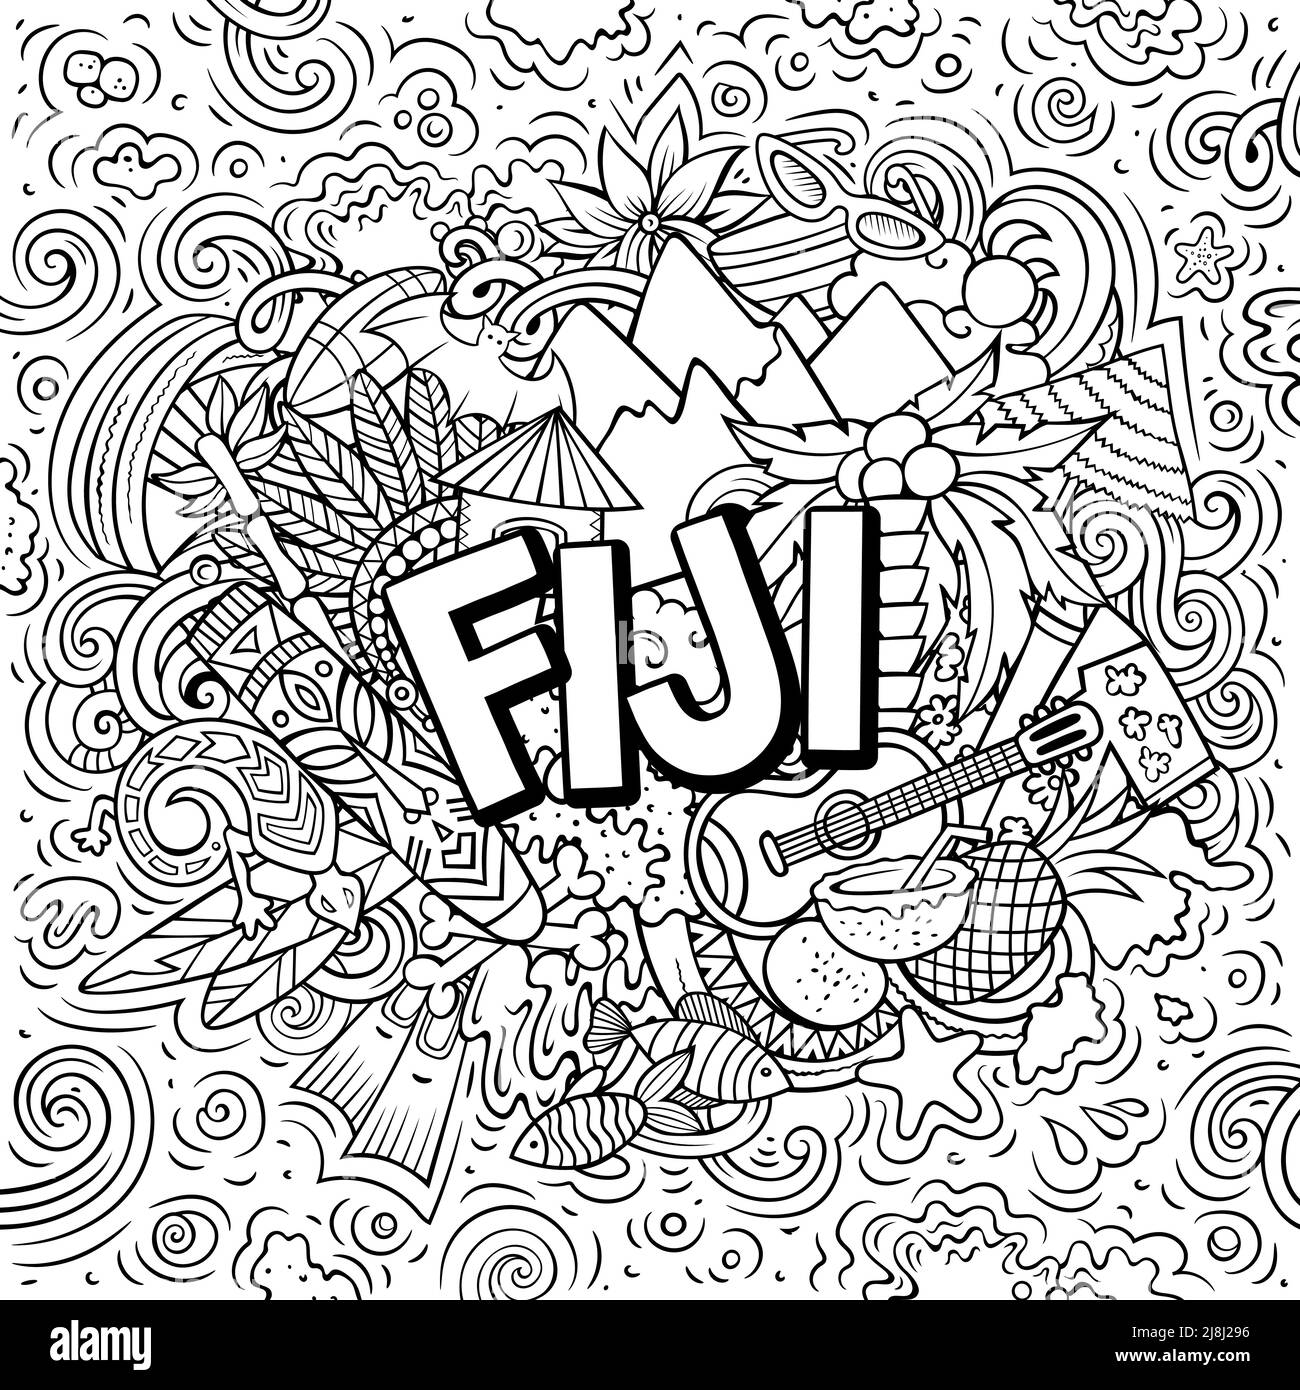 Fidschi handgezeichnete Cartoon-Kritzeleien Illustration. Witziges Reisedesign. Stock Vektor